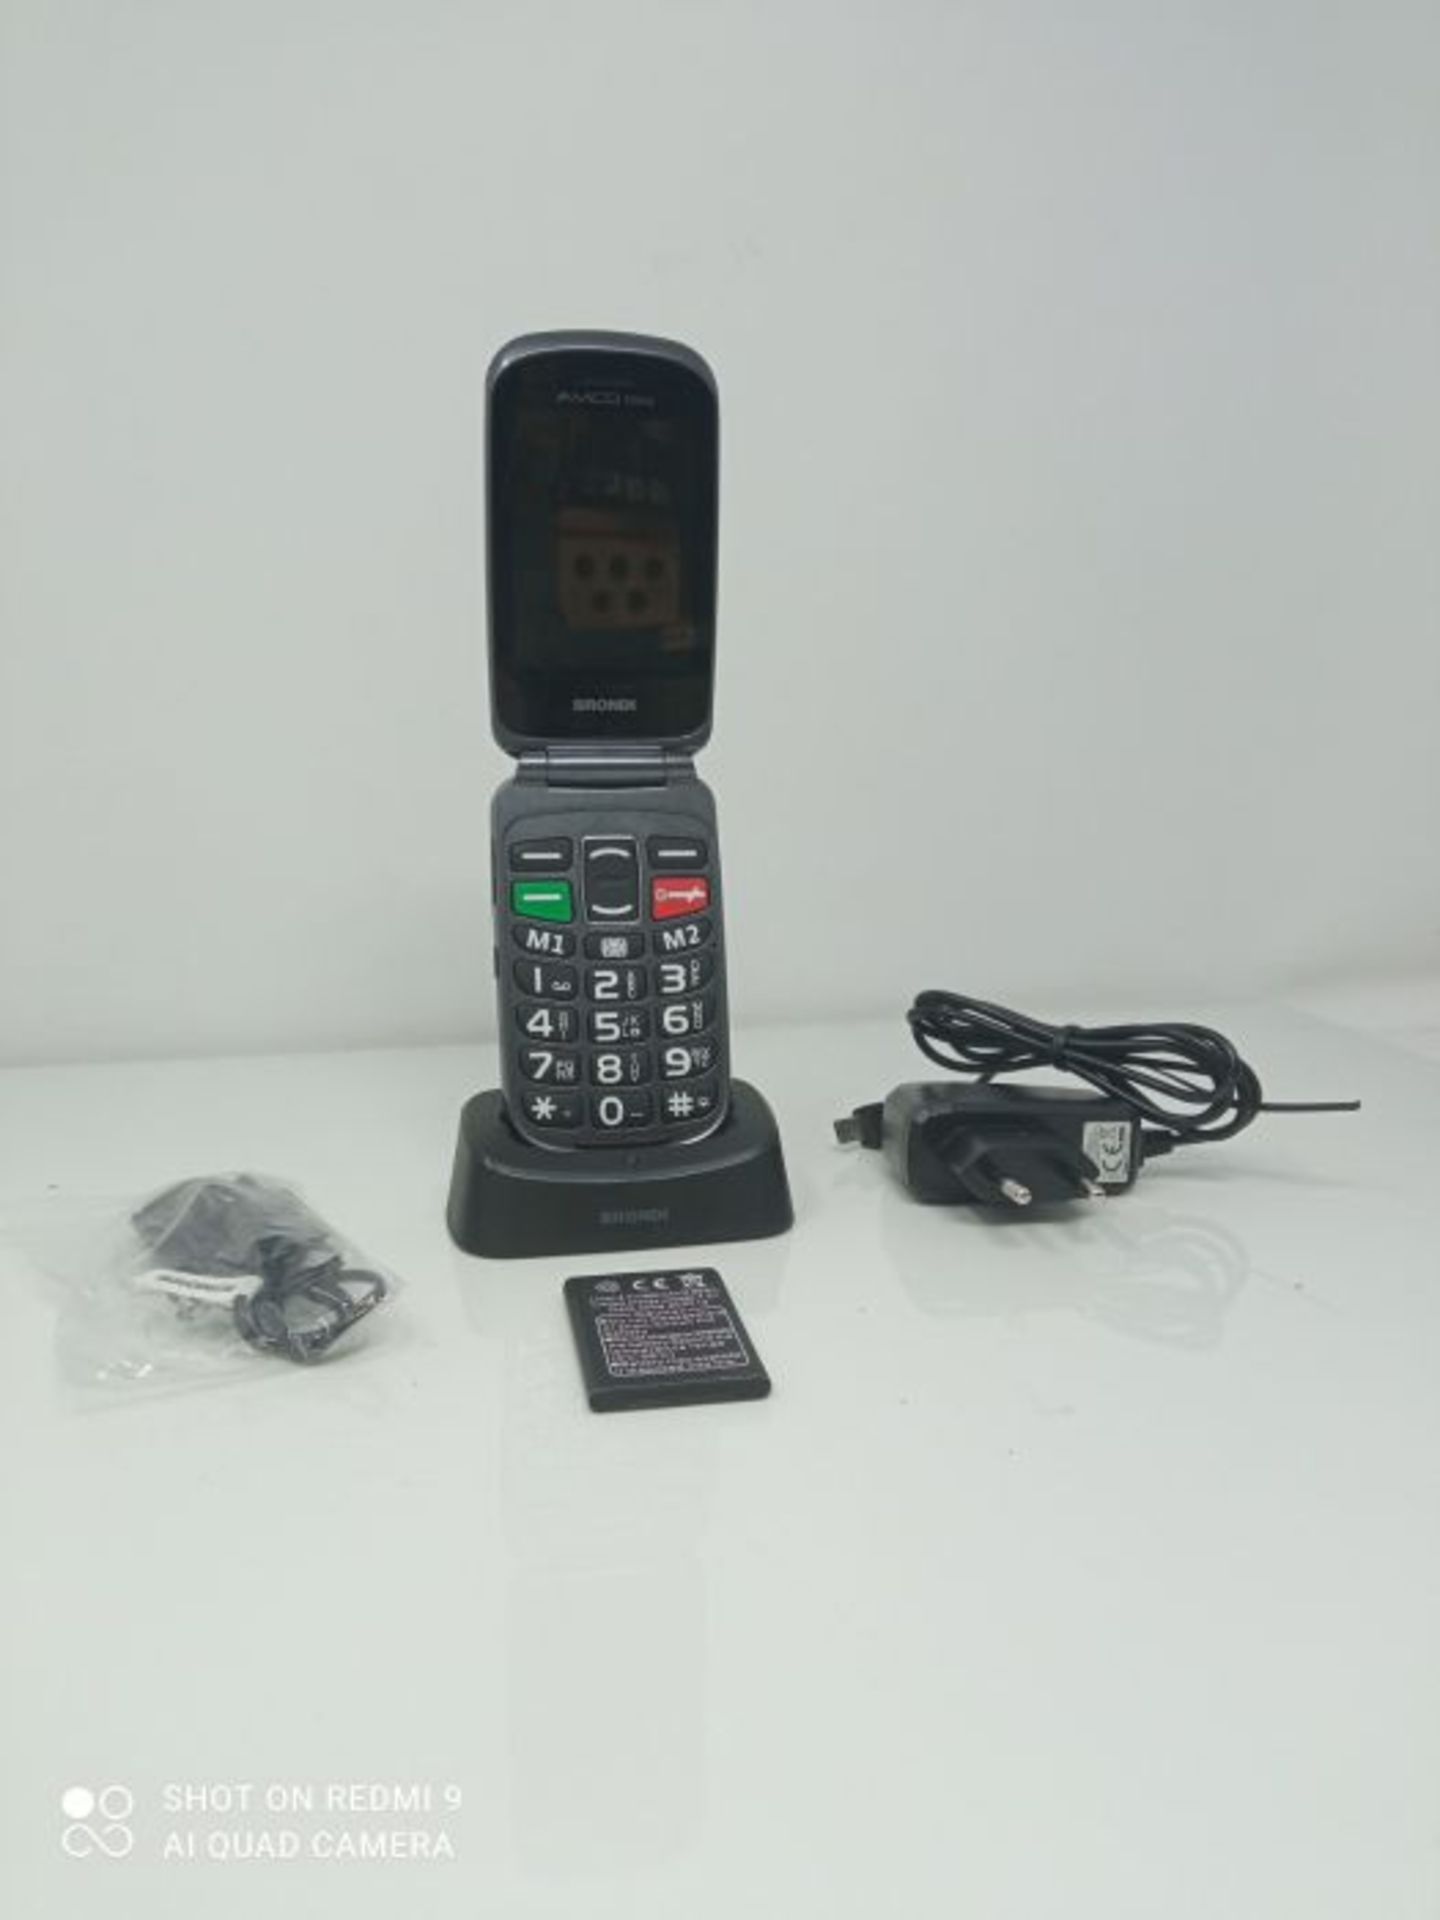 RRP £66.00 Brondi Amico Fedele, Telefono cellulare GSM per anziani con tasti grandi, tasto SOS e - Image 4 of 6